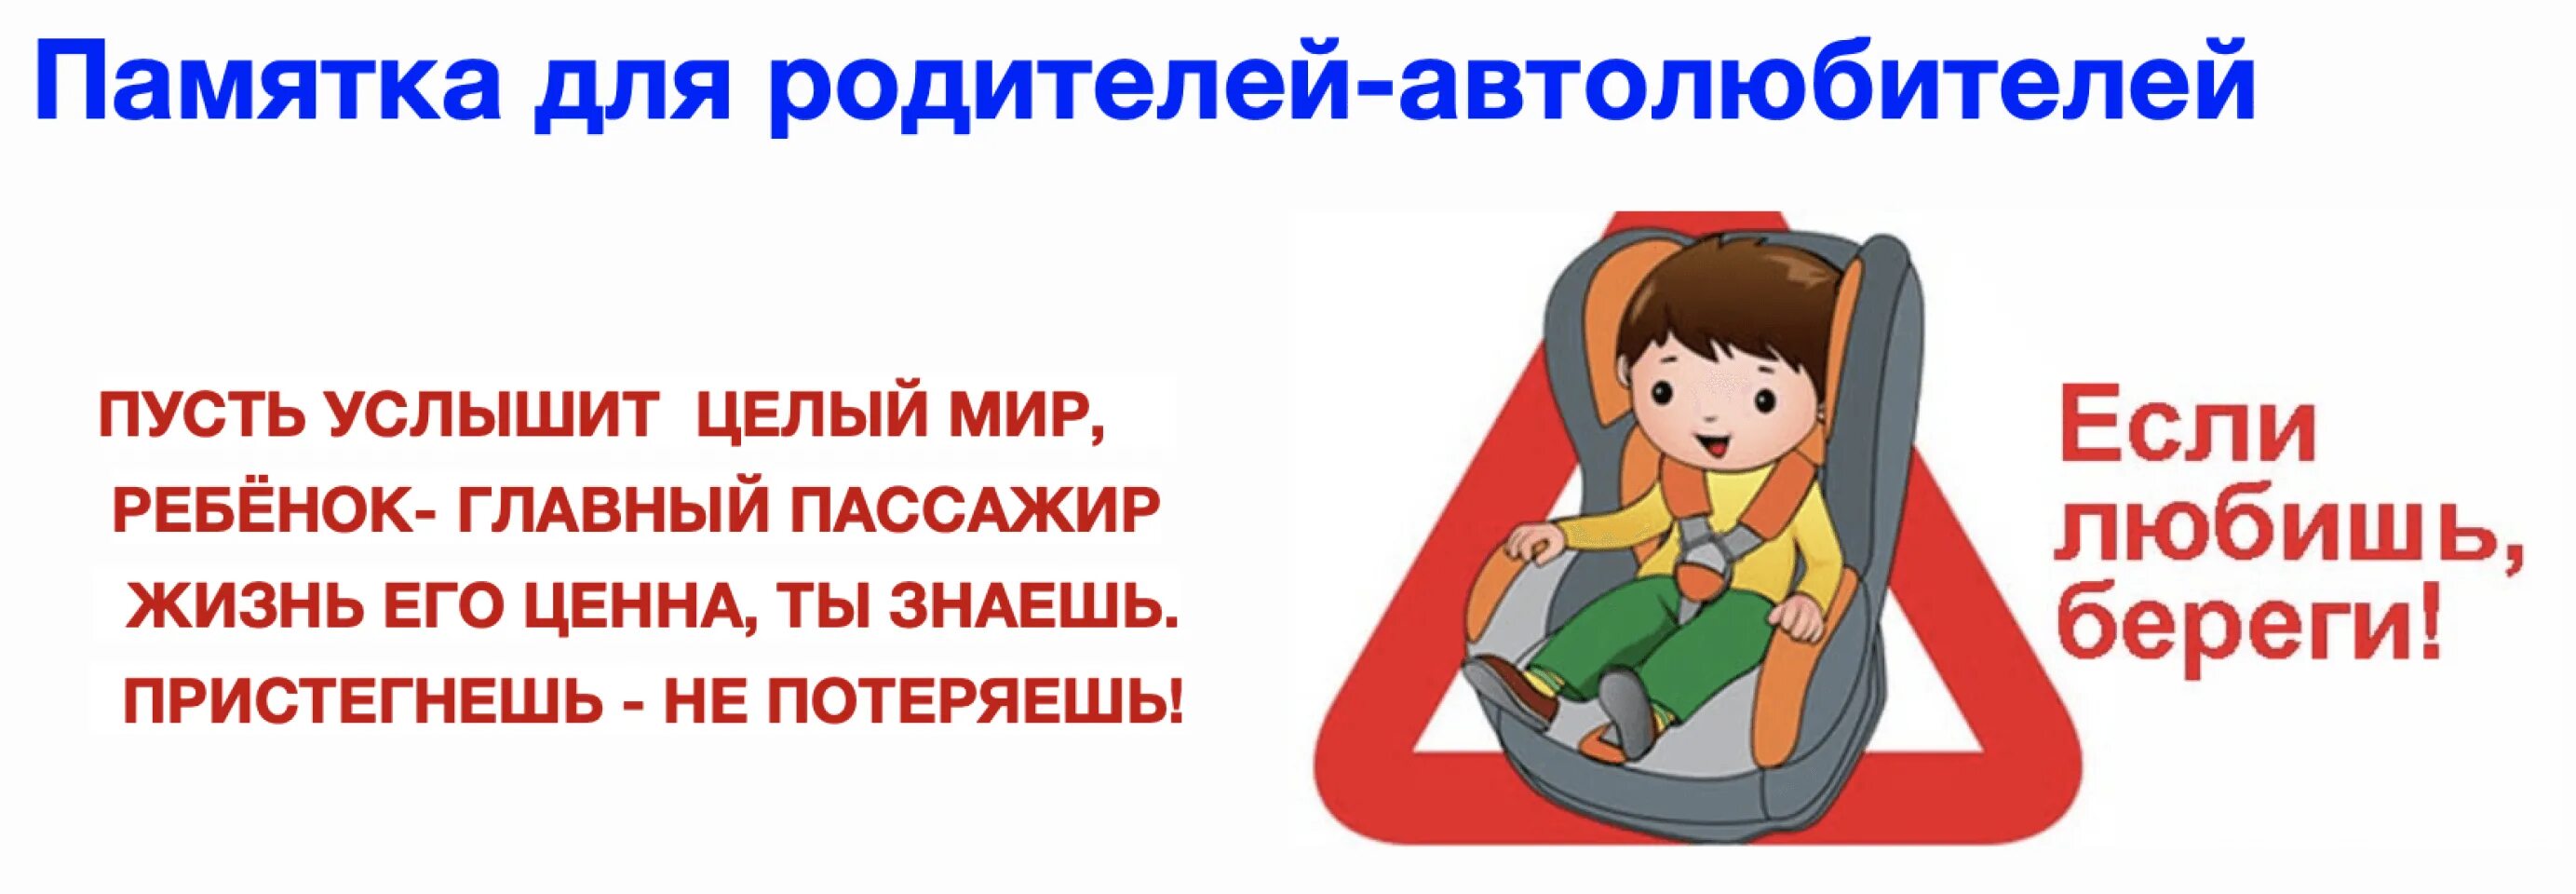 Ребенок главный пассажир памятка для родителей. Автокресло детям памятка для детей. Безопасность детей в автомобиле. Родители пристегните детей ремнями безопасности.